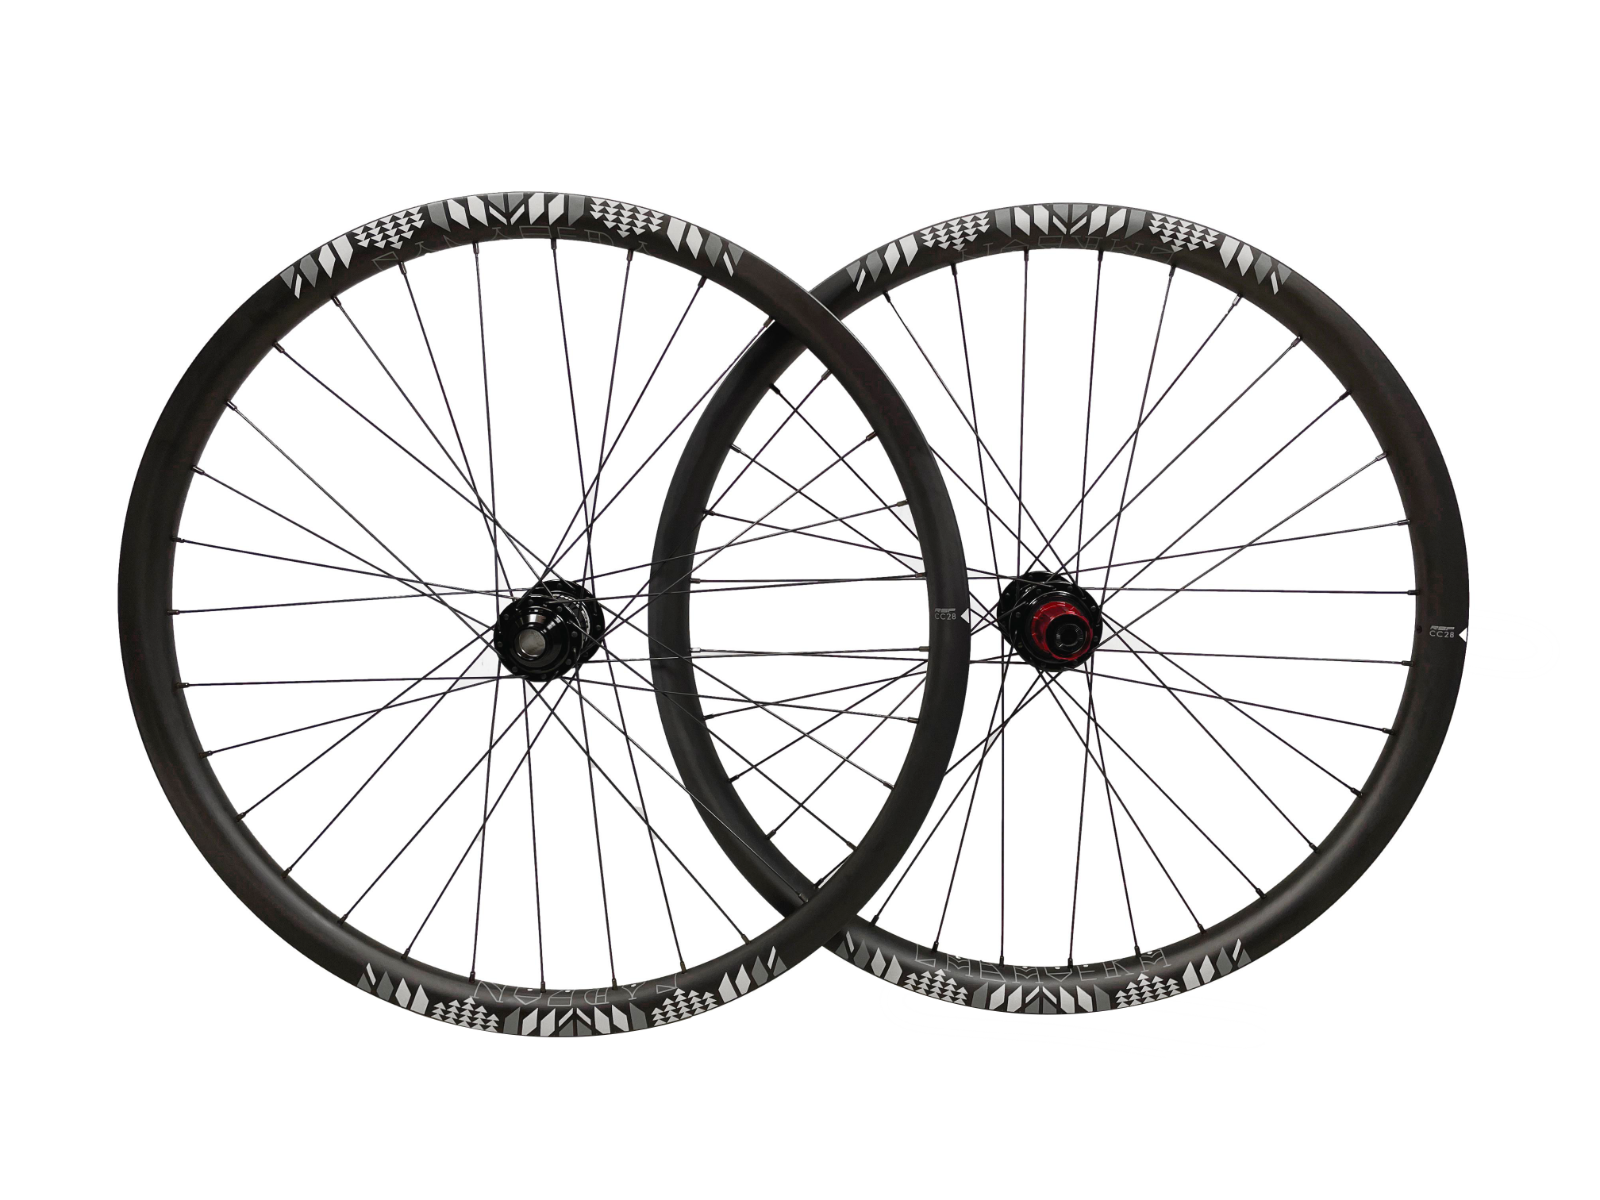 RSP Calavera Carbon Downhill Wheel Set - 27.5" - 28mm Rim - Sportandleisure.com (7084102484122)